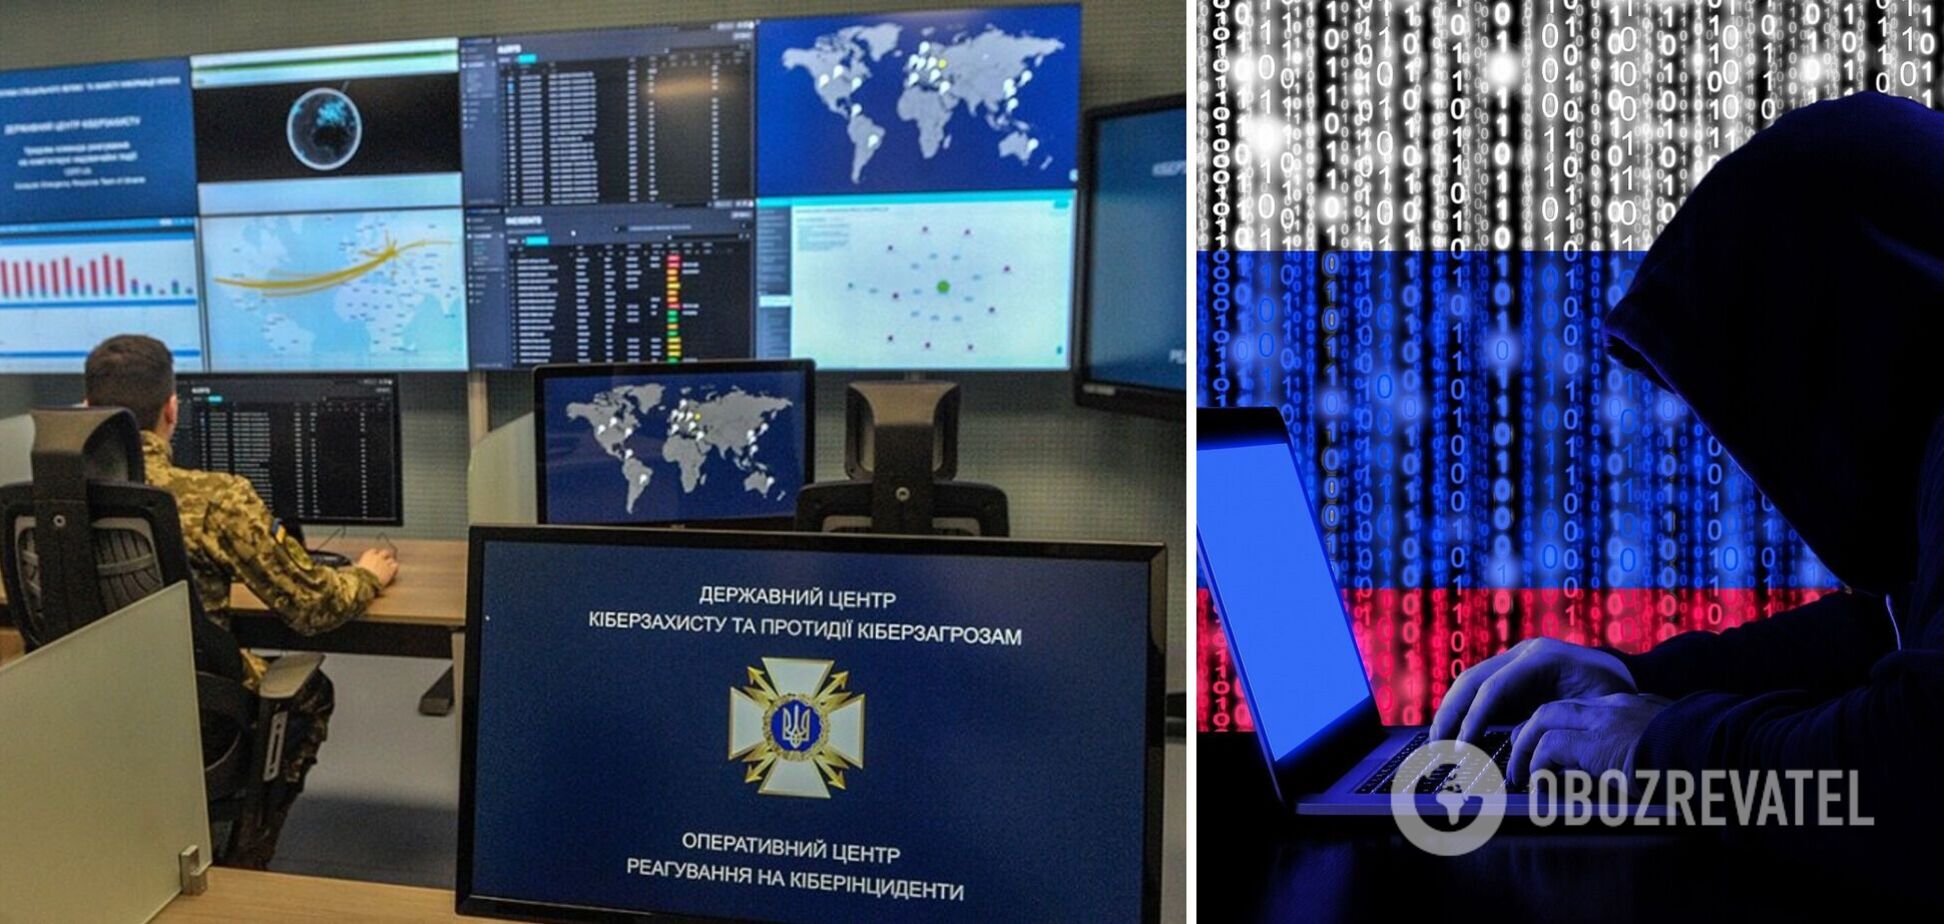 С начала войны российские хакеры совершили более 200 кибератак по Украине